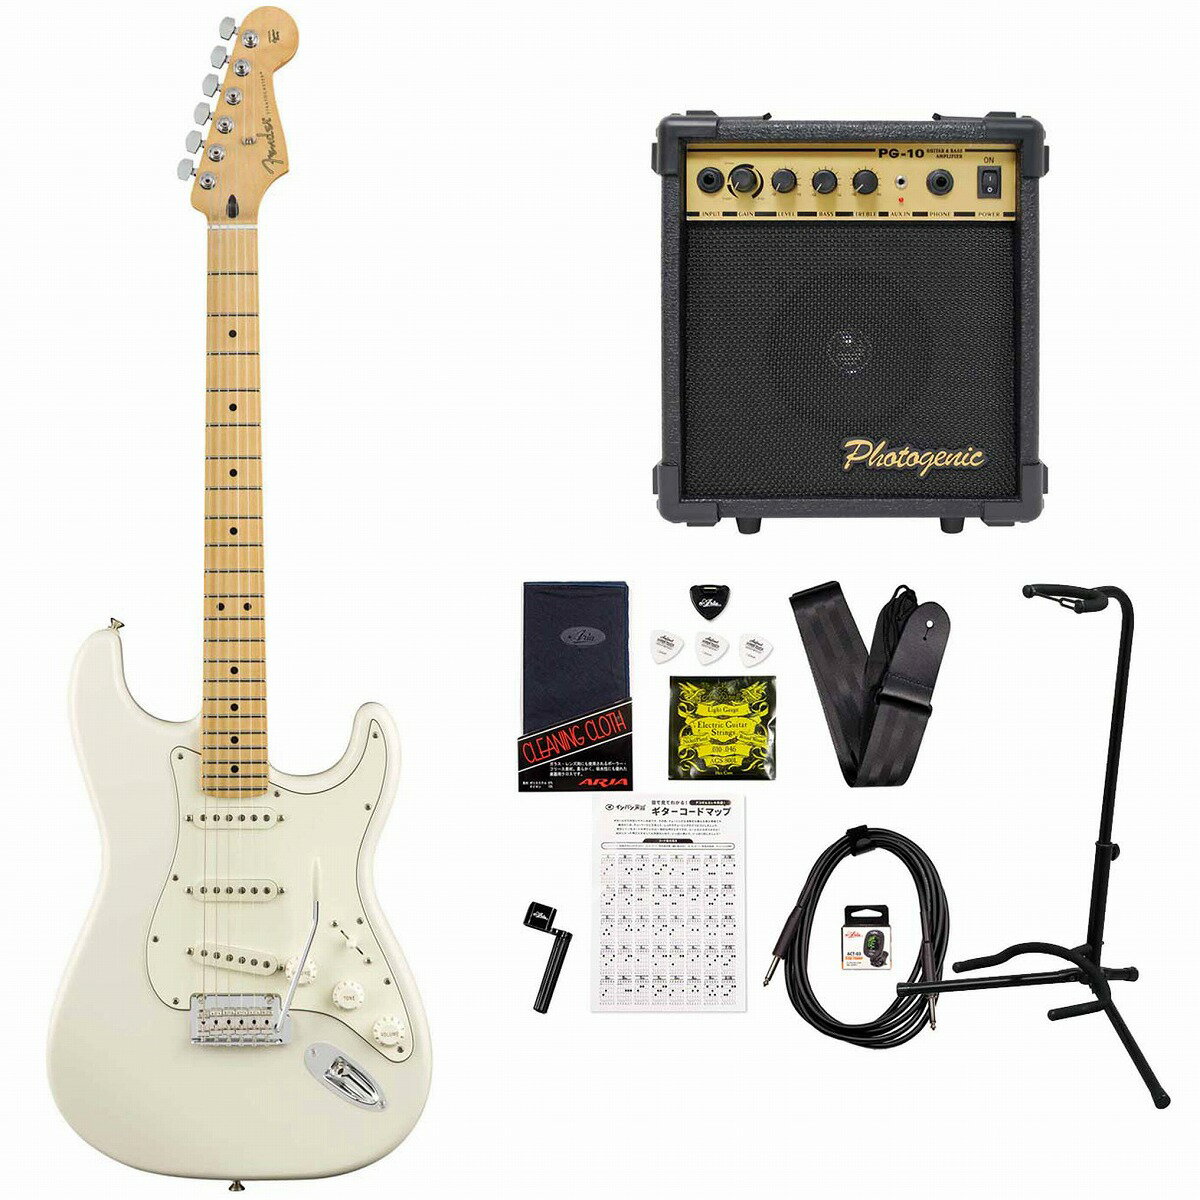 《限界突破特価!》Fender / Player Series Stratocaster Polar White Maple PG-10アンプ付属エレキギター初心者セット《+4582600680067》